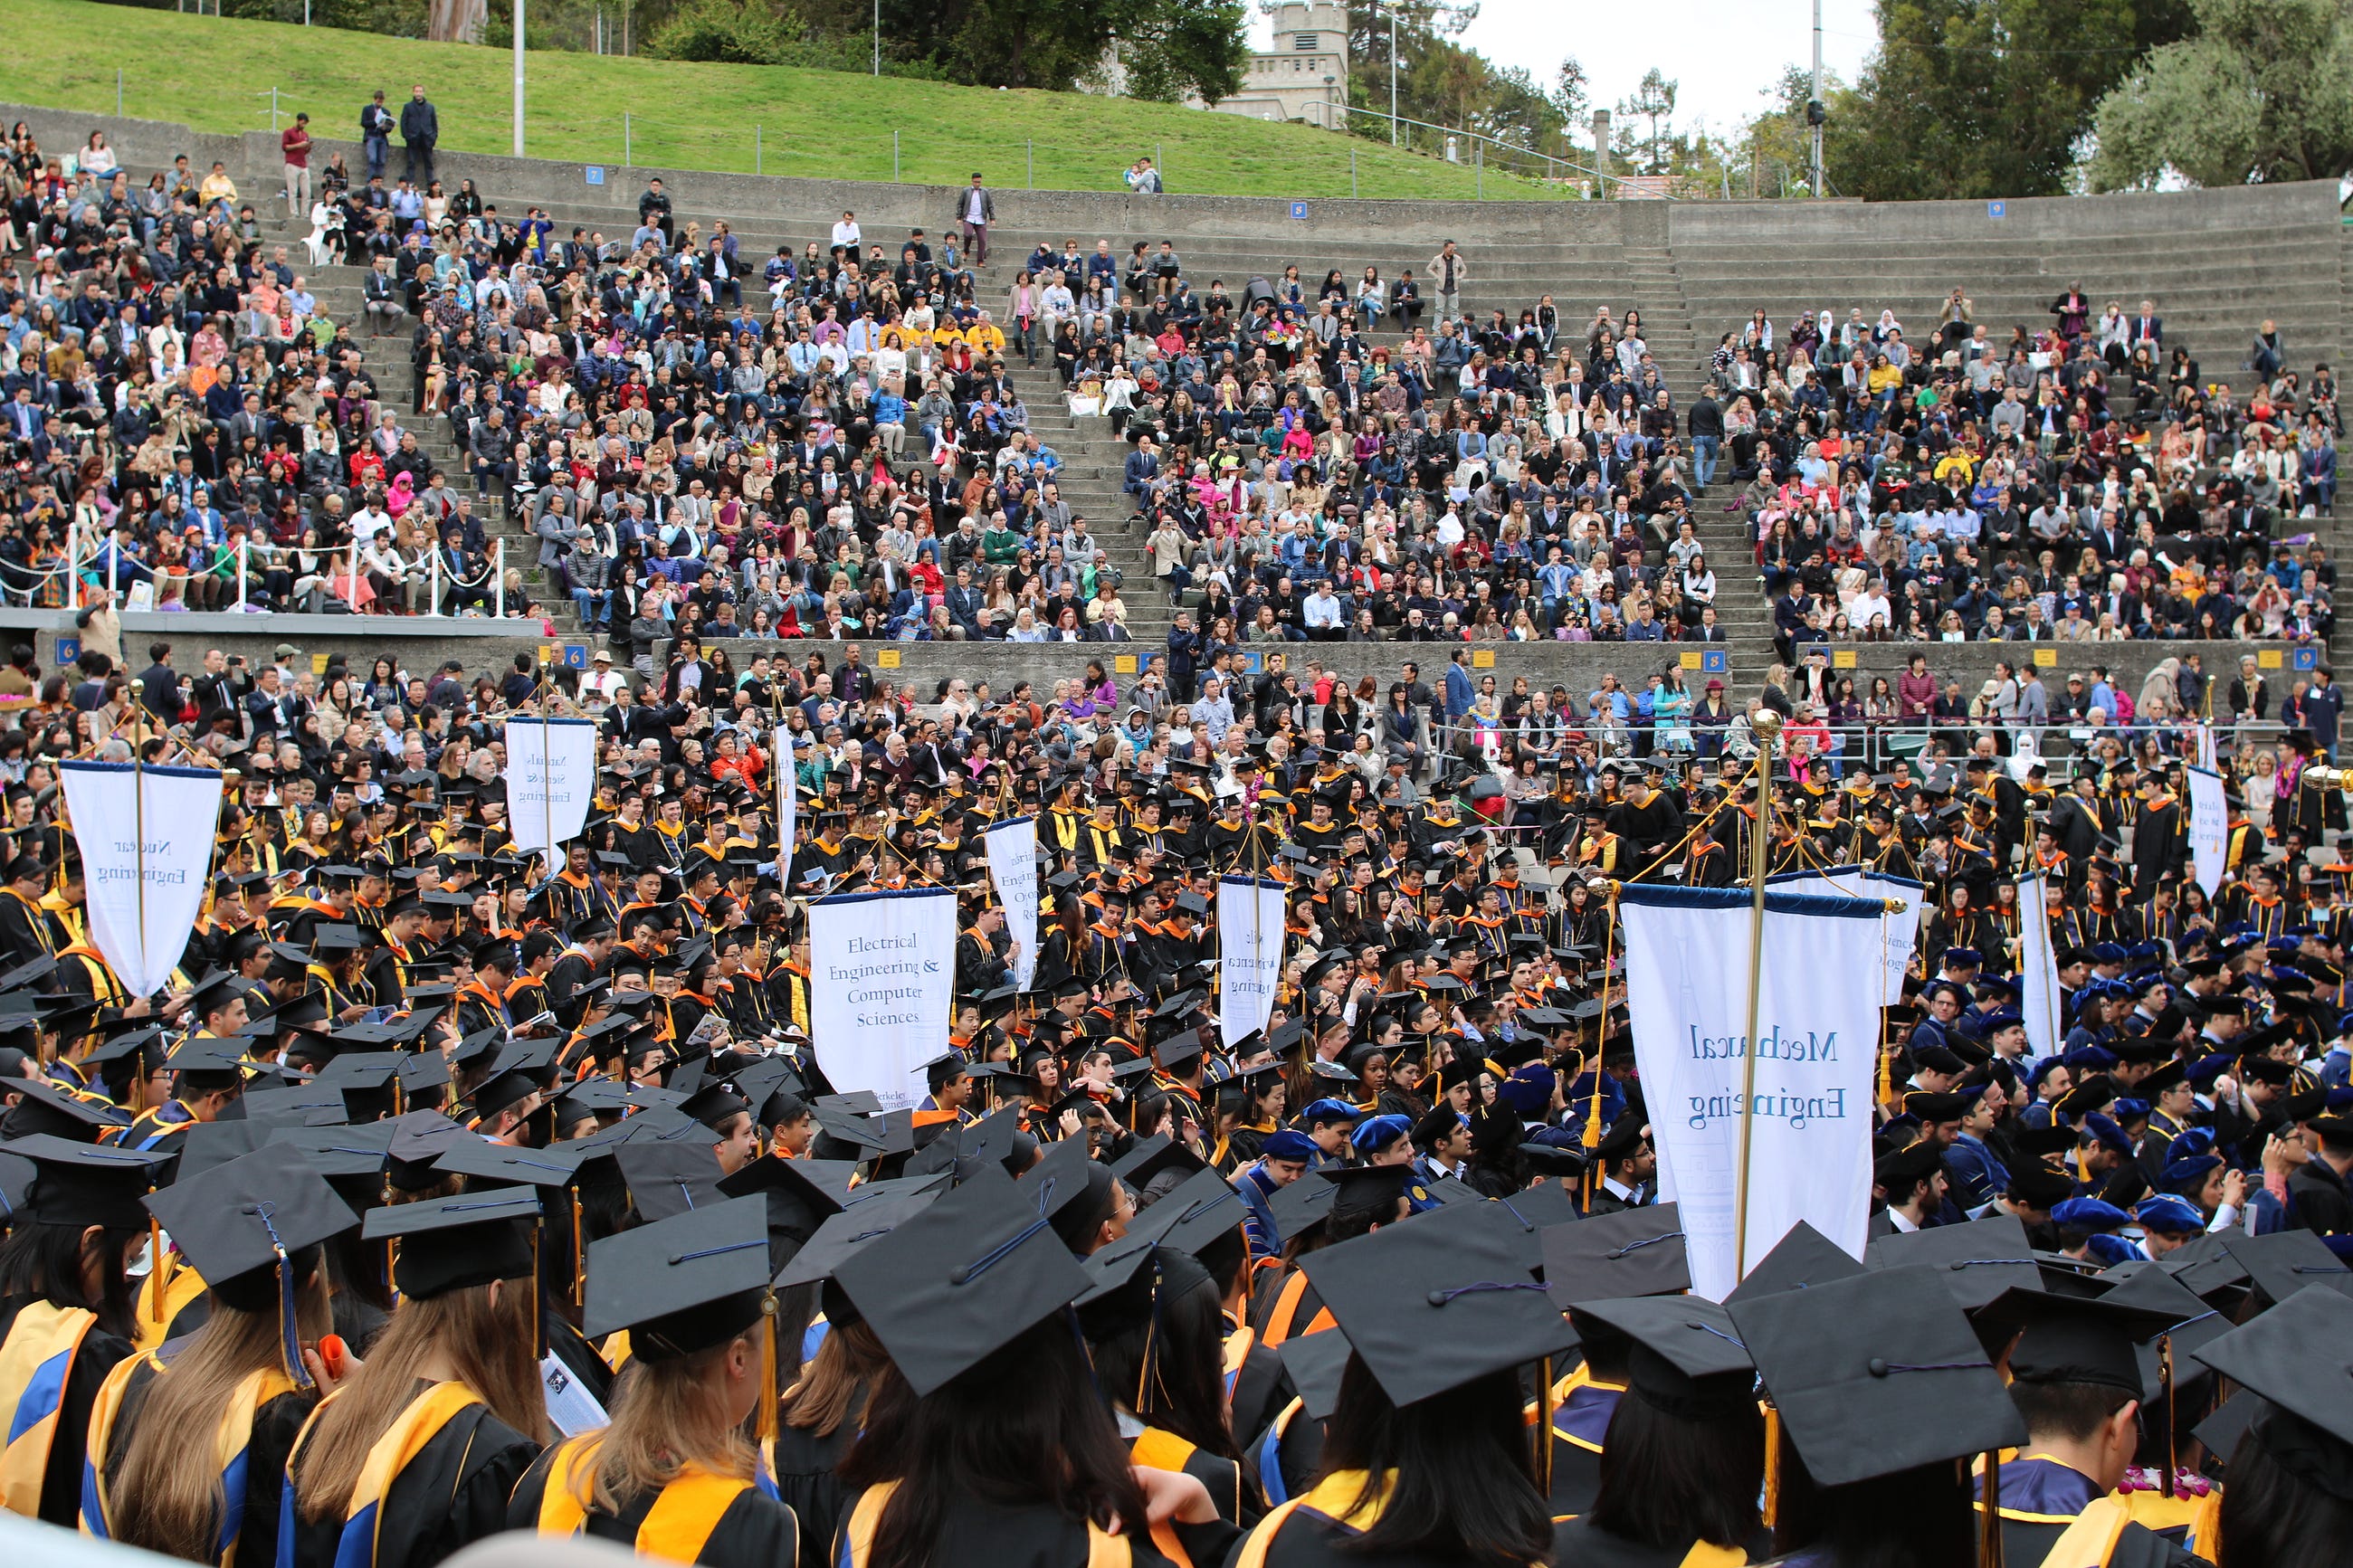 UC Berkeley MEng honors 375 graduates in Class of 2018